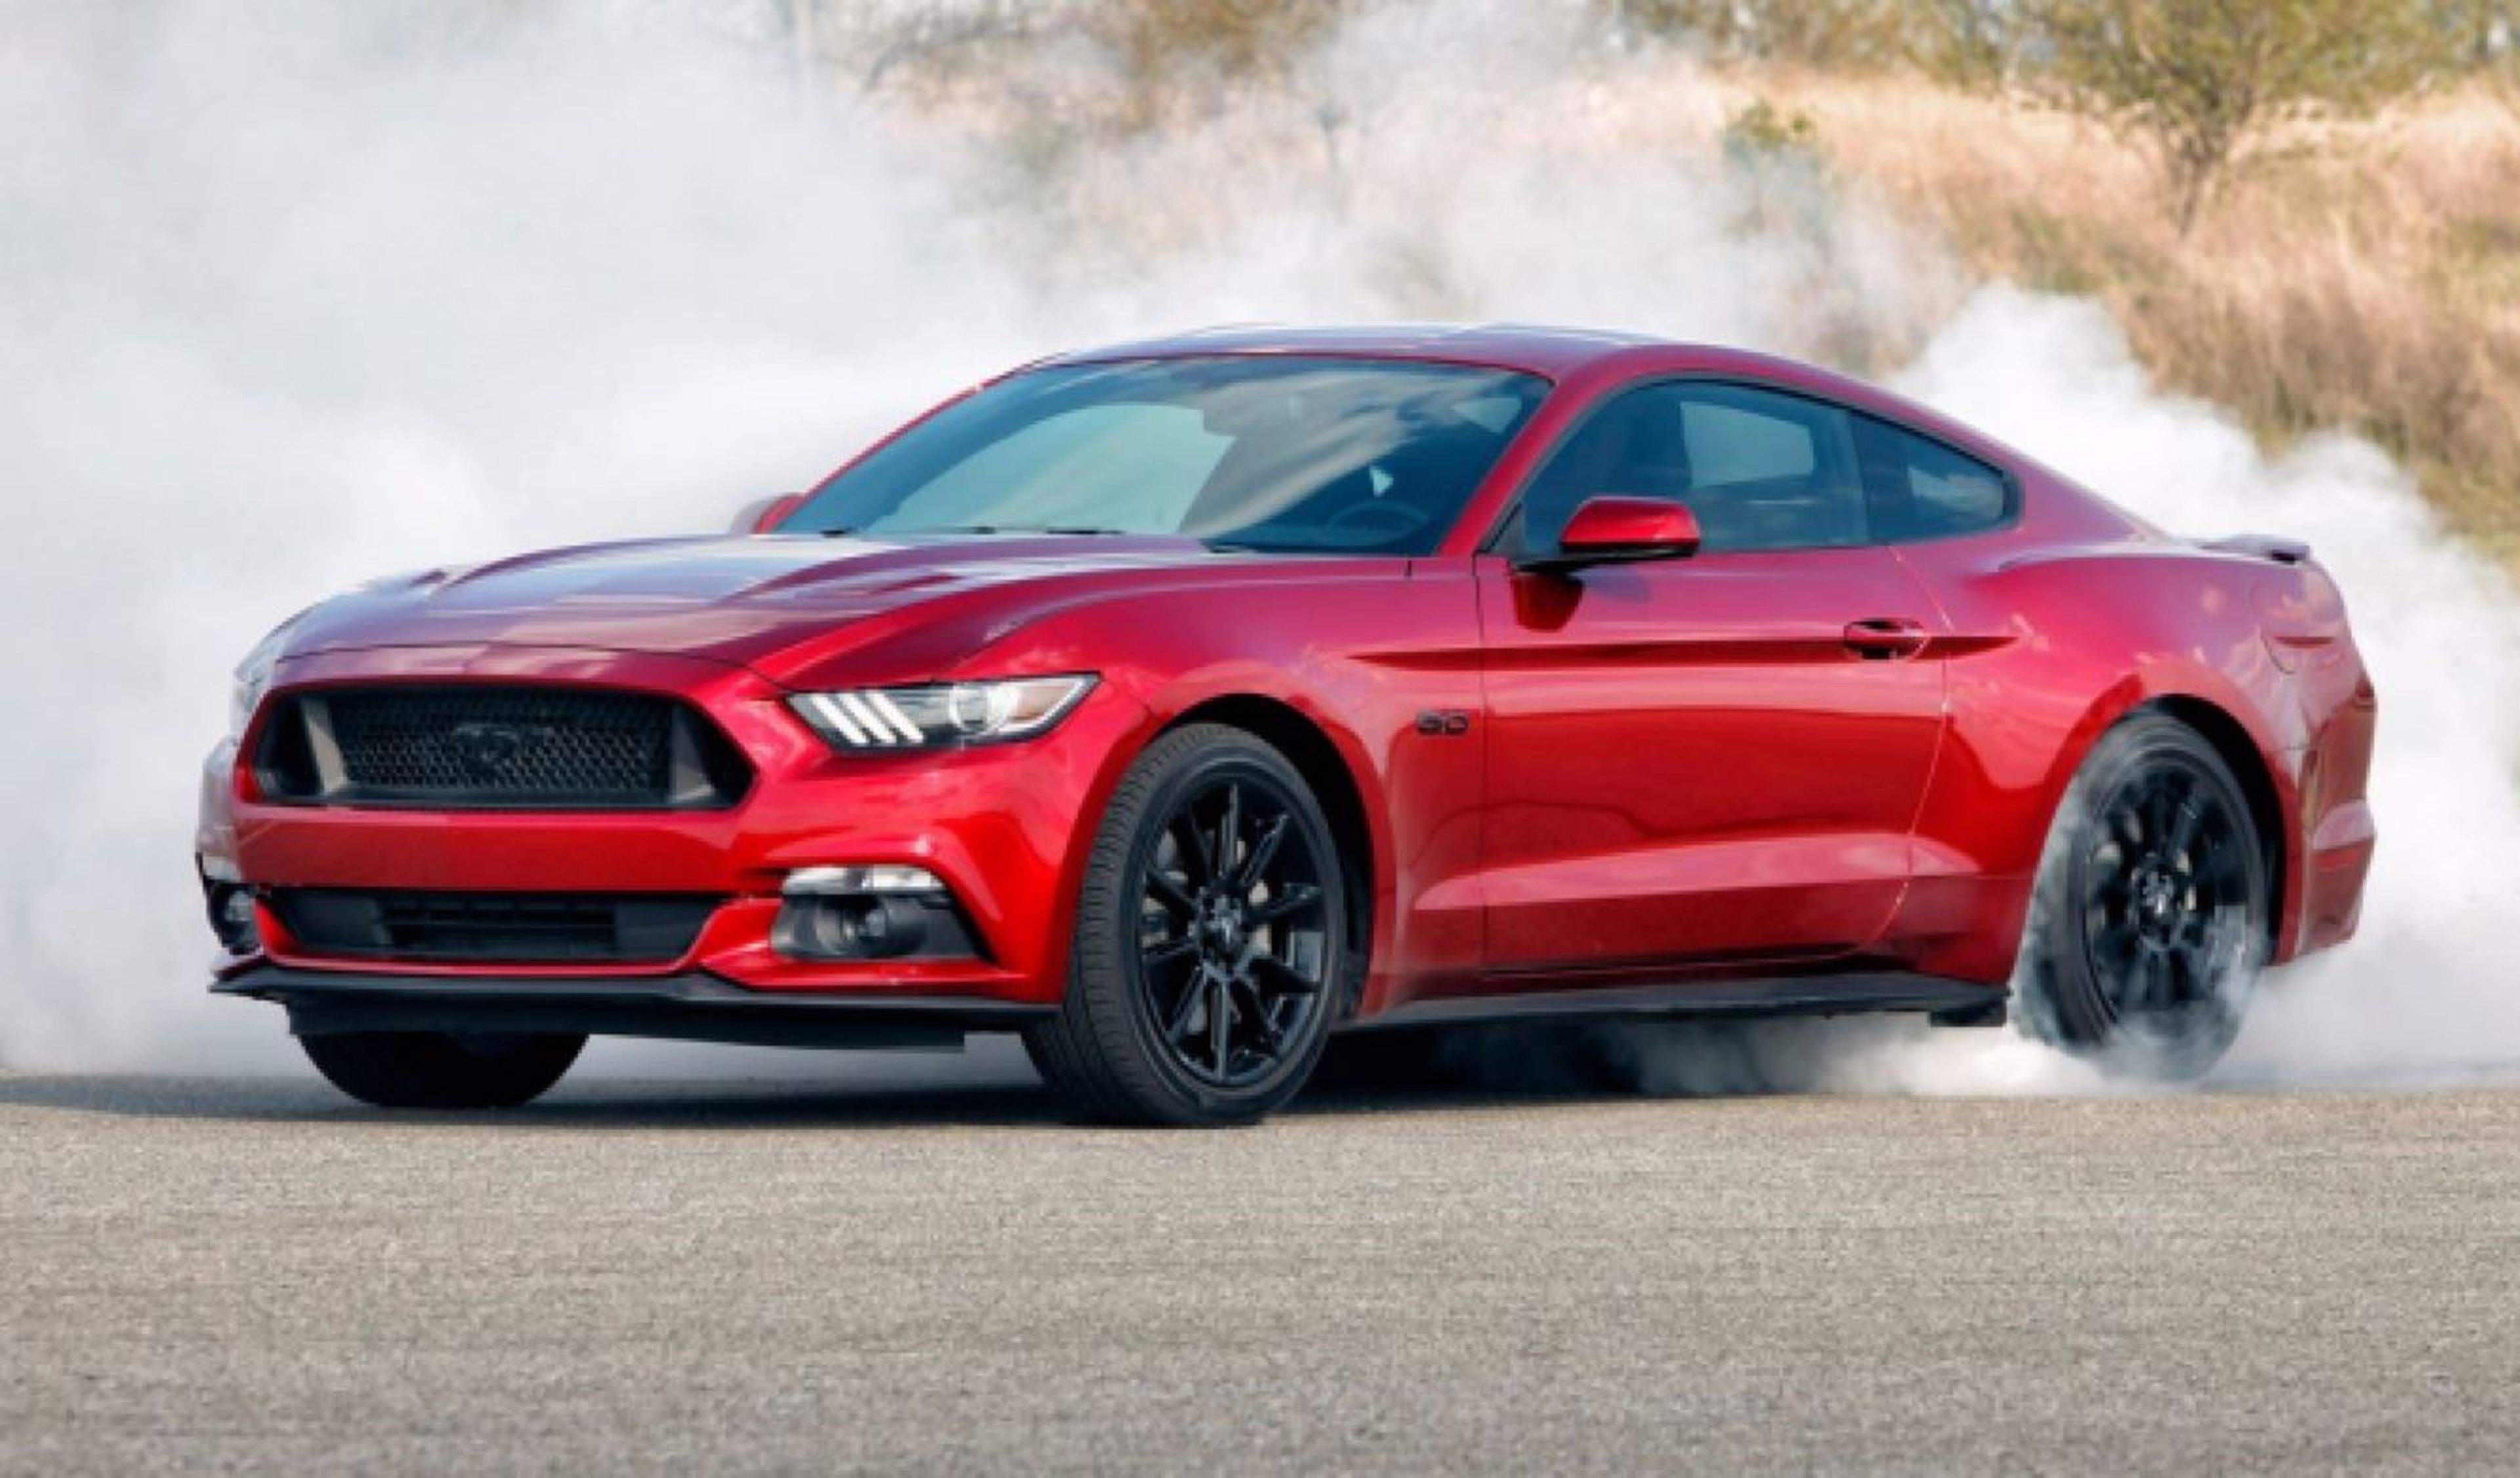 El 'facelift' del Ford Mustang tendrá cambio de 10 marchas